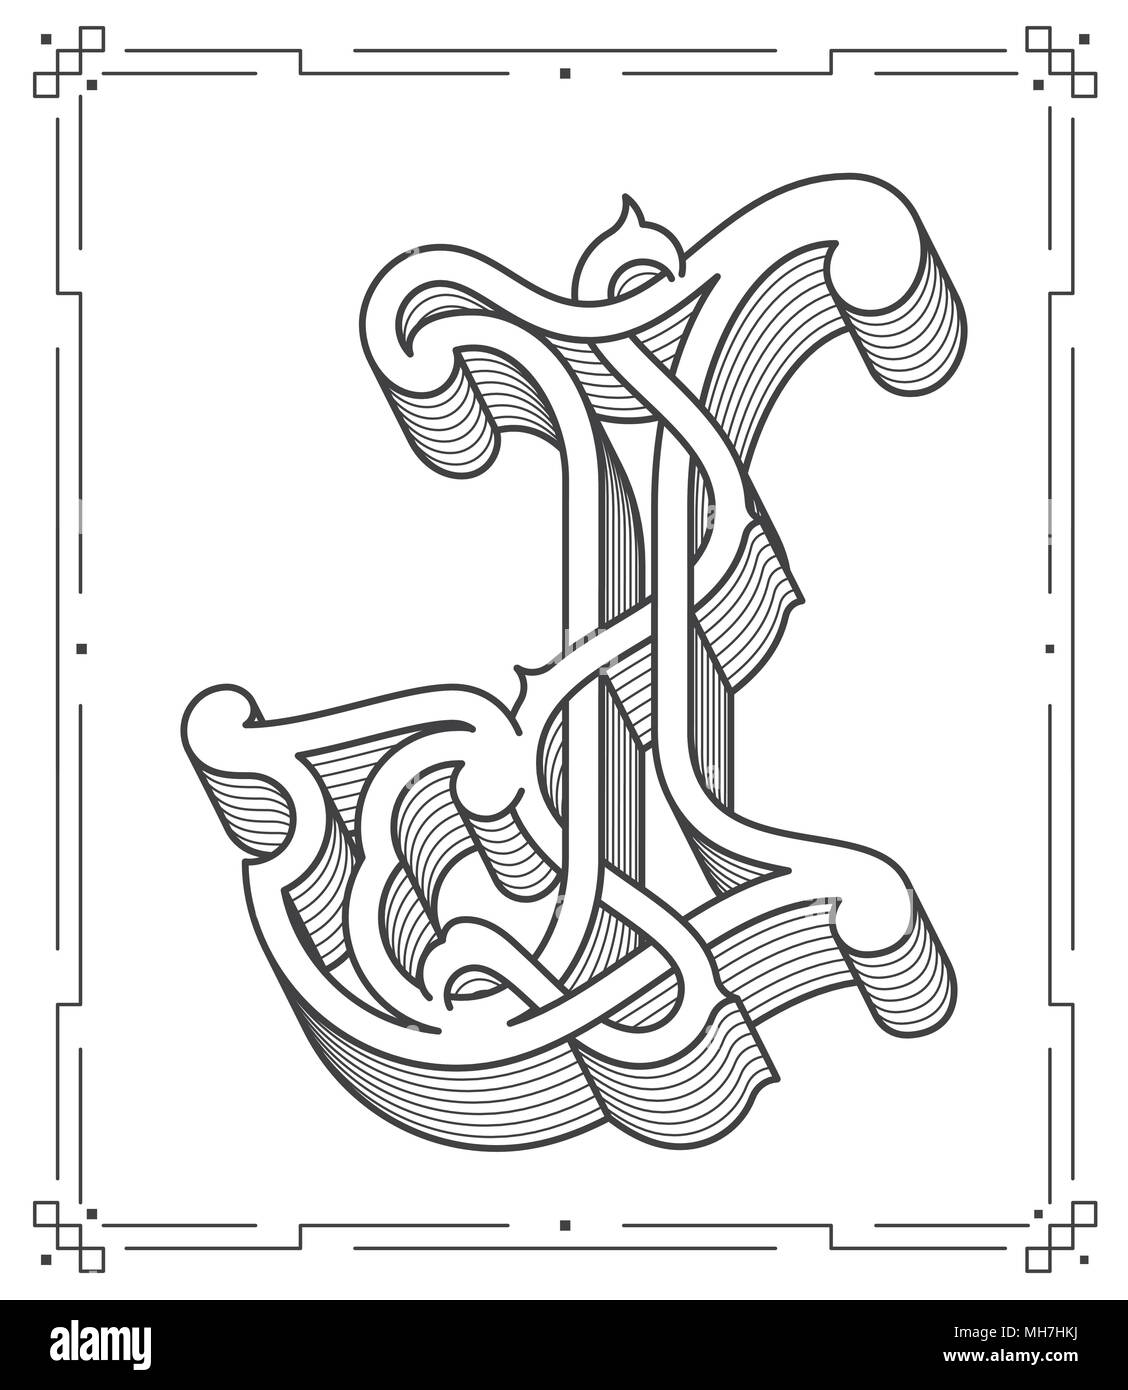 C'est un noir sur blanc vector illustration de la lettre majuscule J Illustration de Vecteur